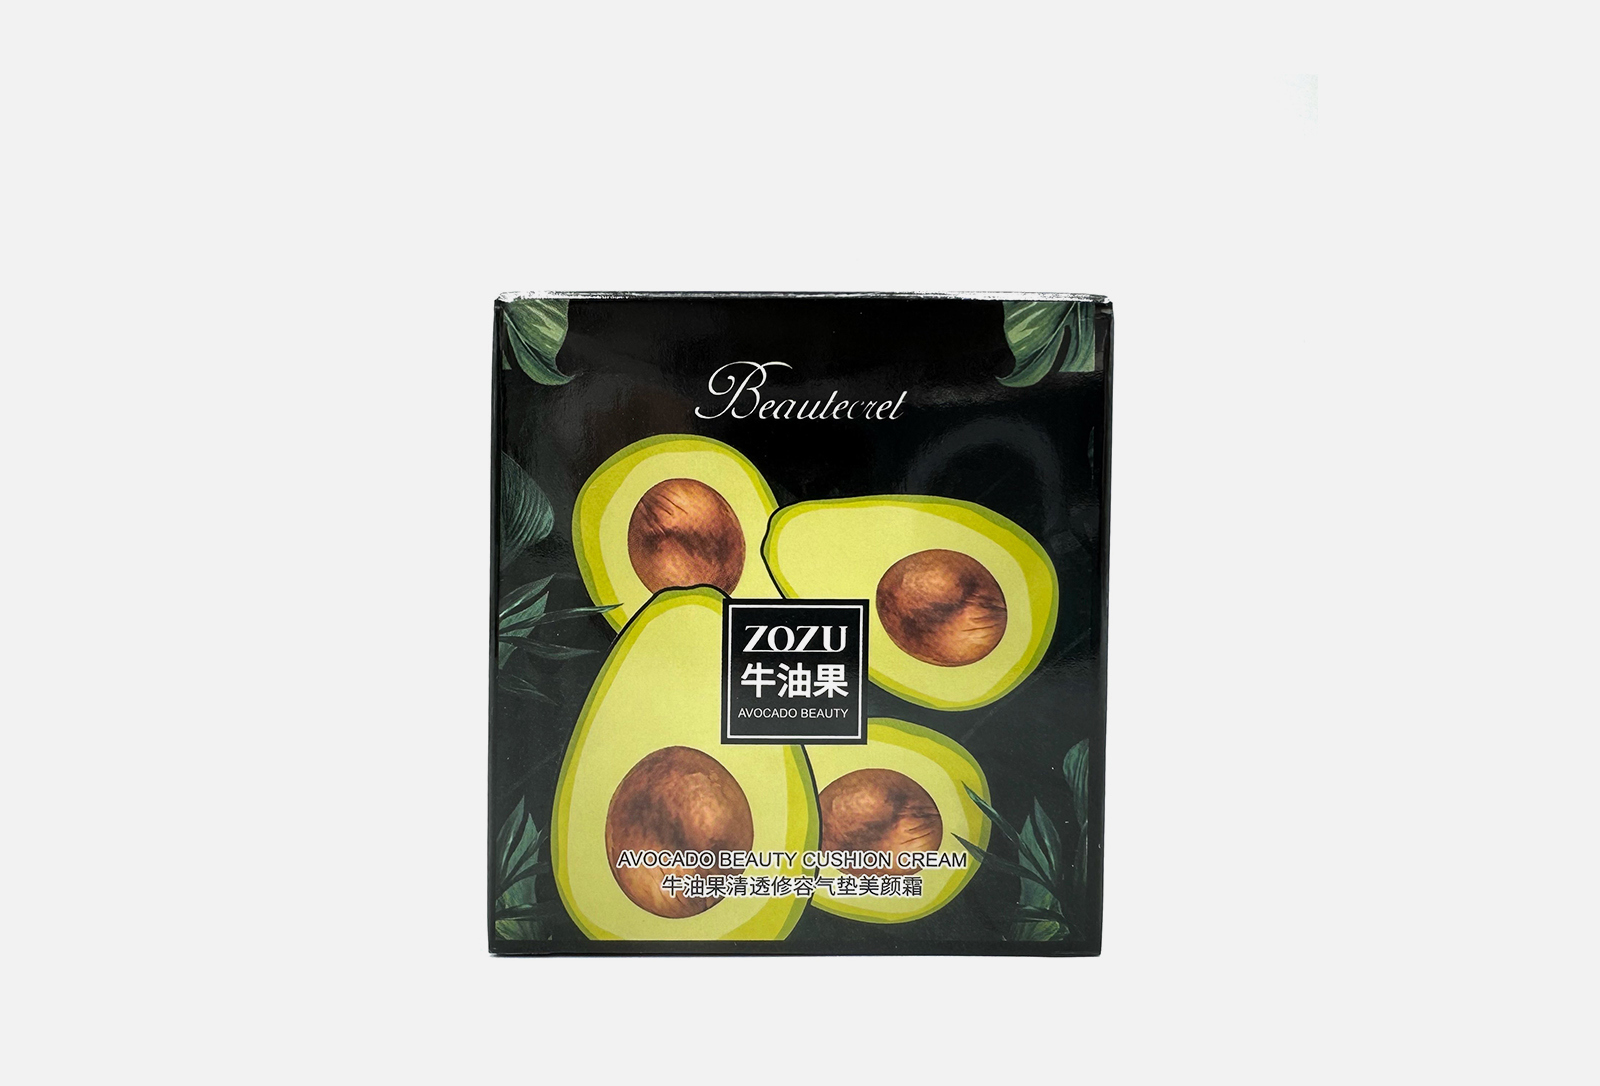 ZOZU Кушон для лица 3 в 1 avocado extract 01. Натуральный 20 гр — купить в Москве